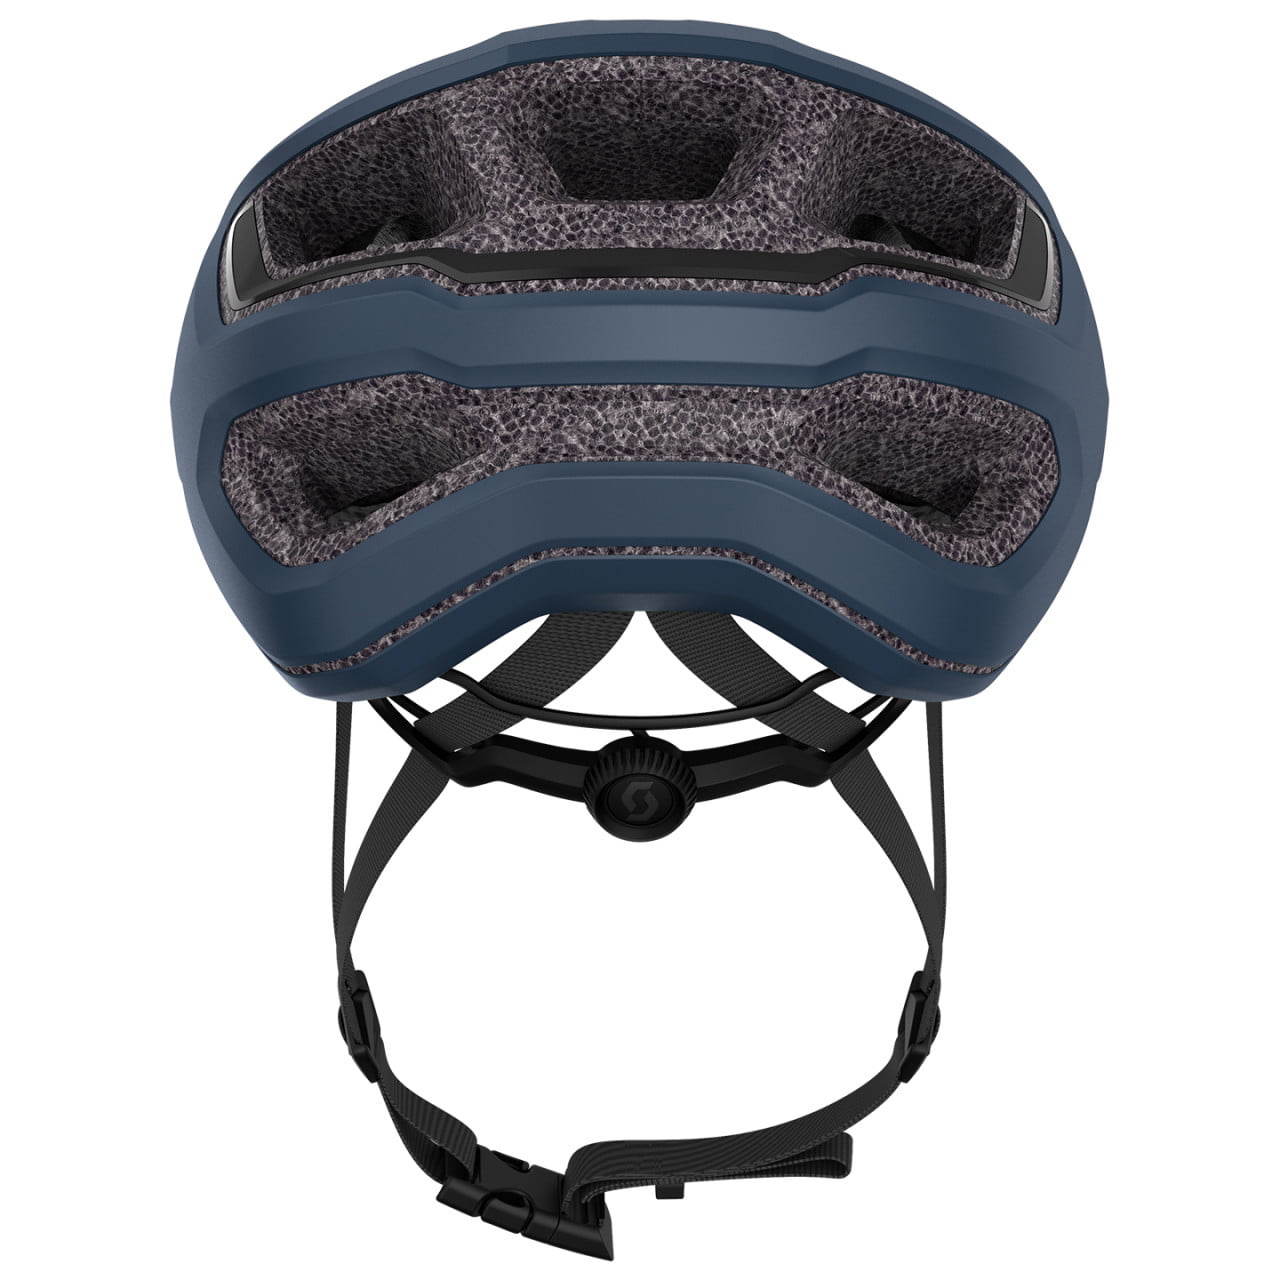 Arx 2024 Road Bike Helmet